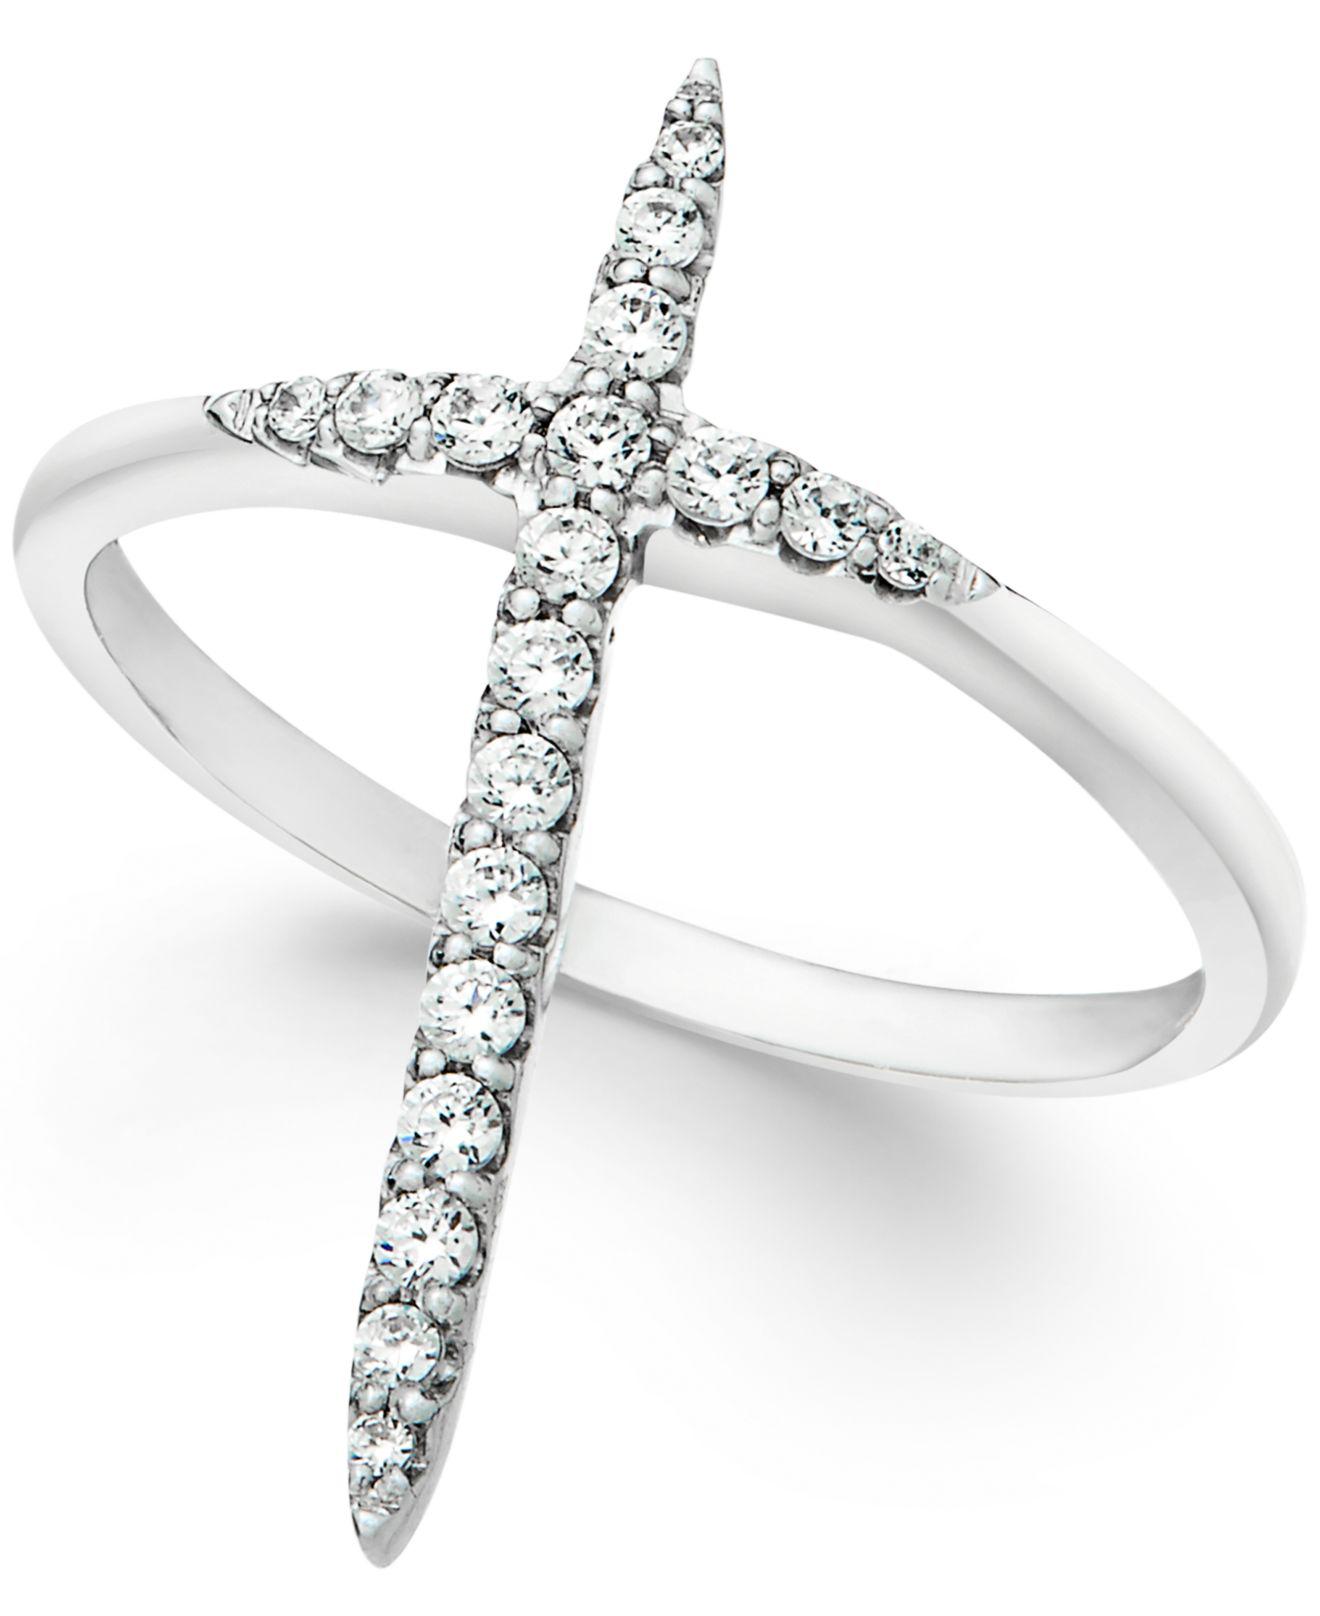  Macy s  Diamond  Extended Cross  Ring  In 10k White Gold 1 4 